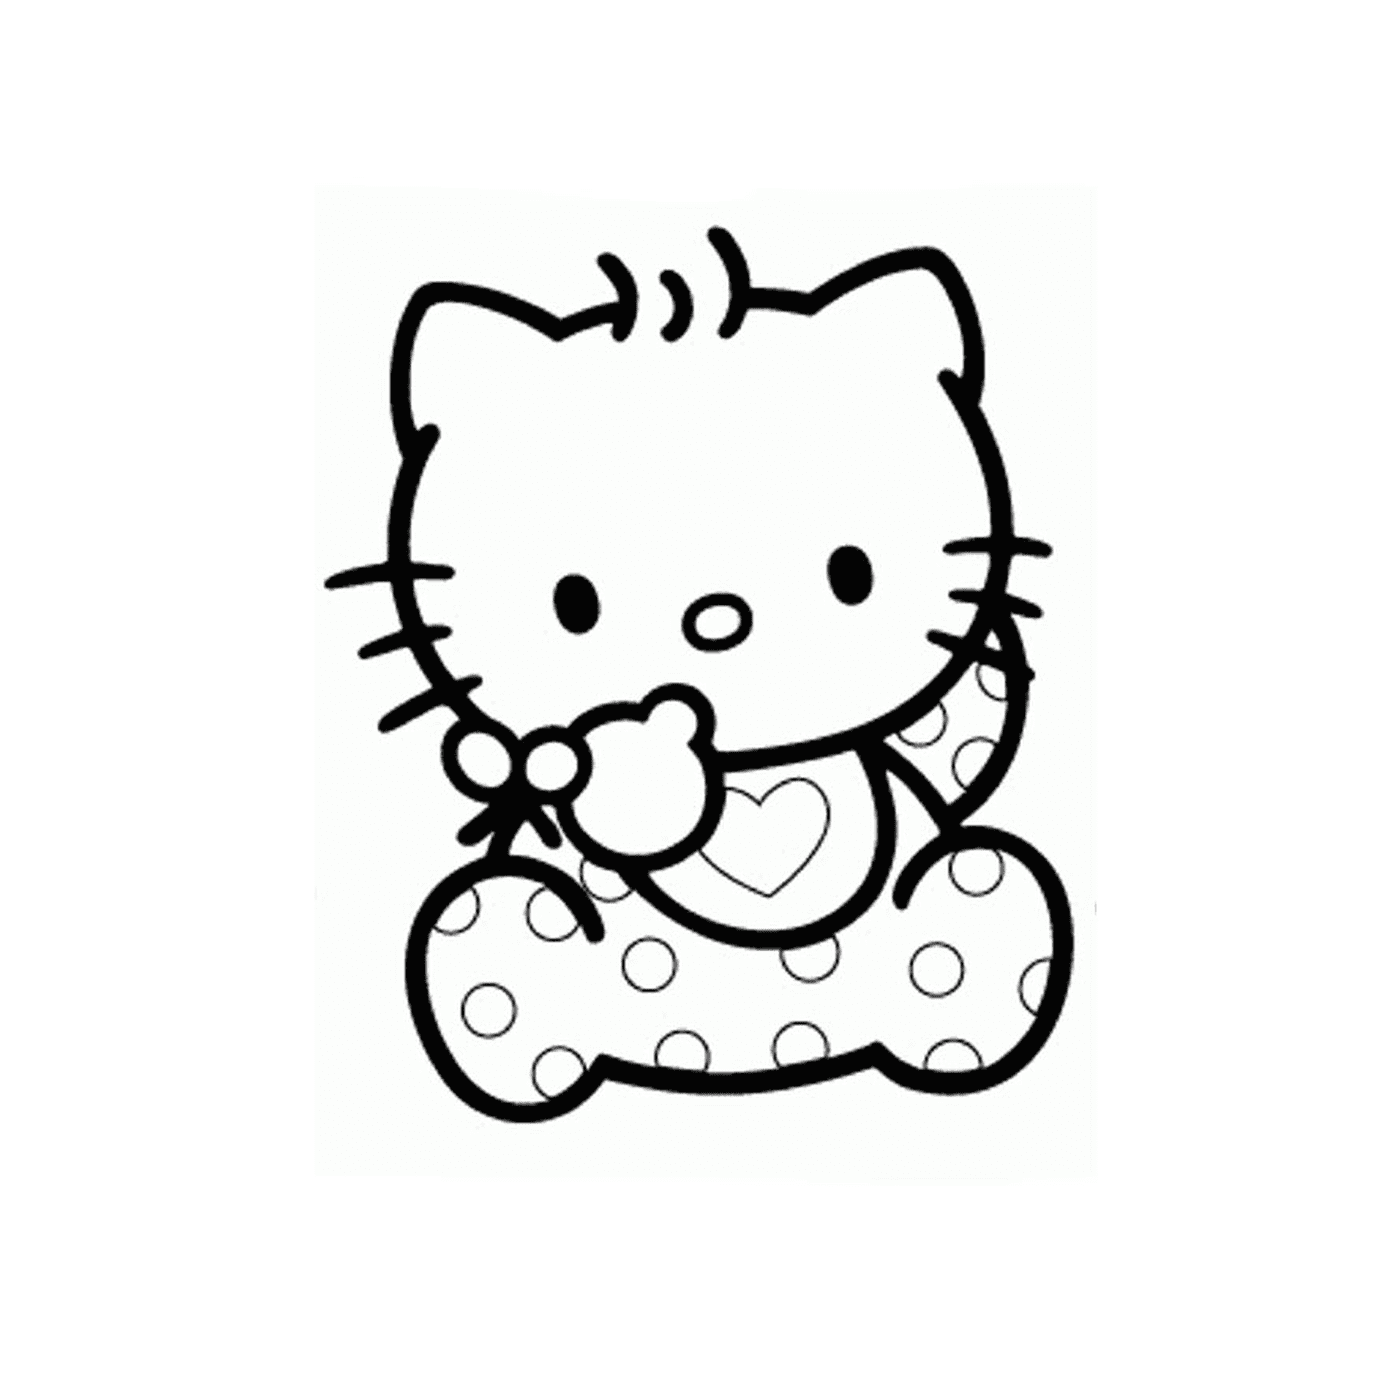  Hello Kitty bebê 